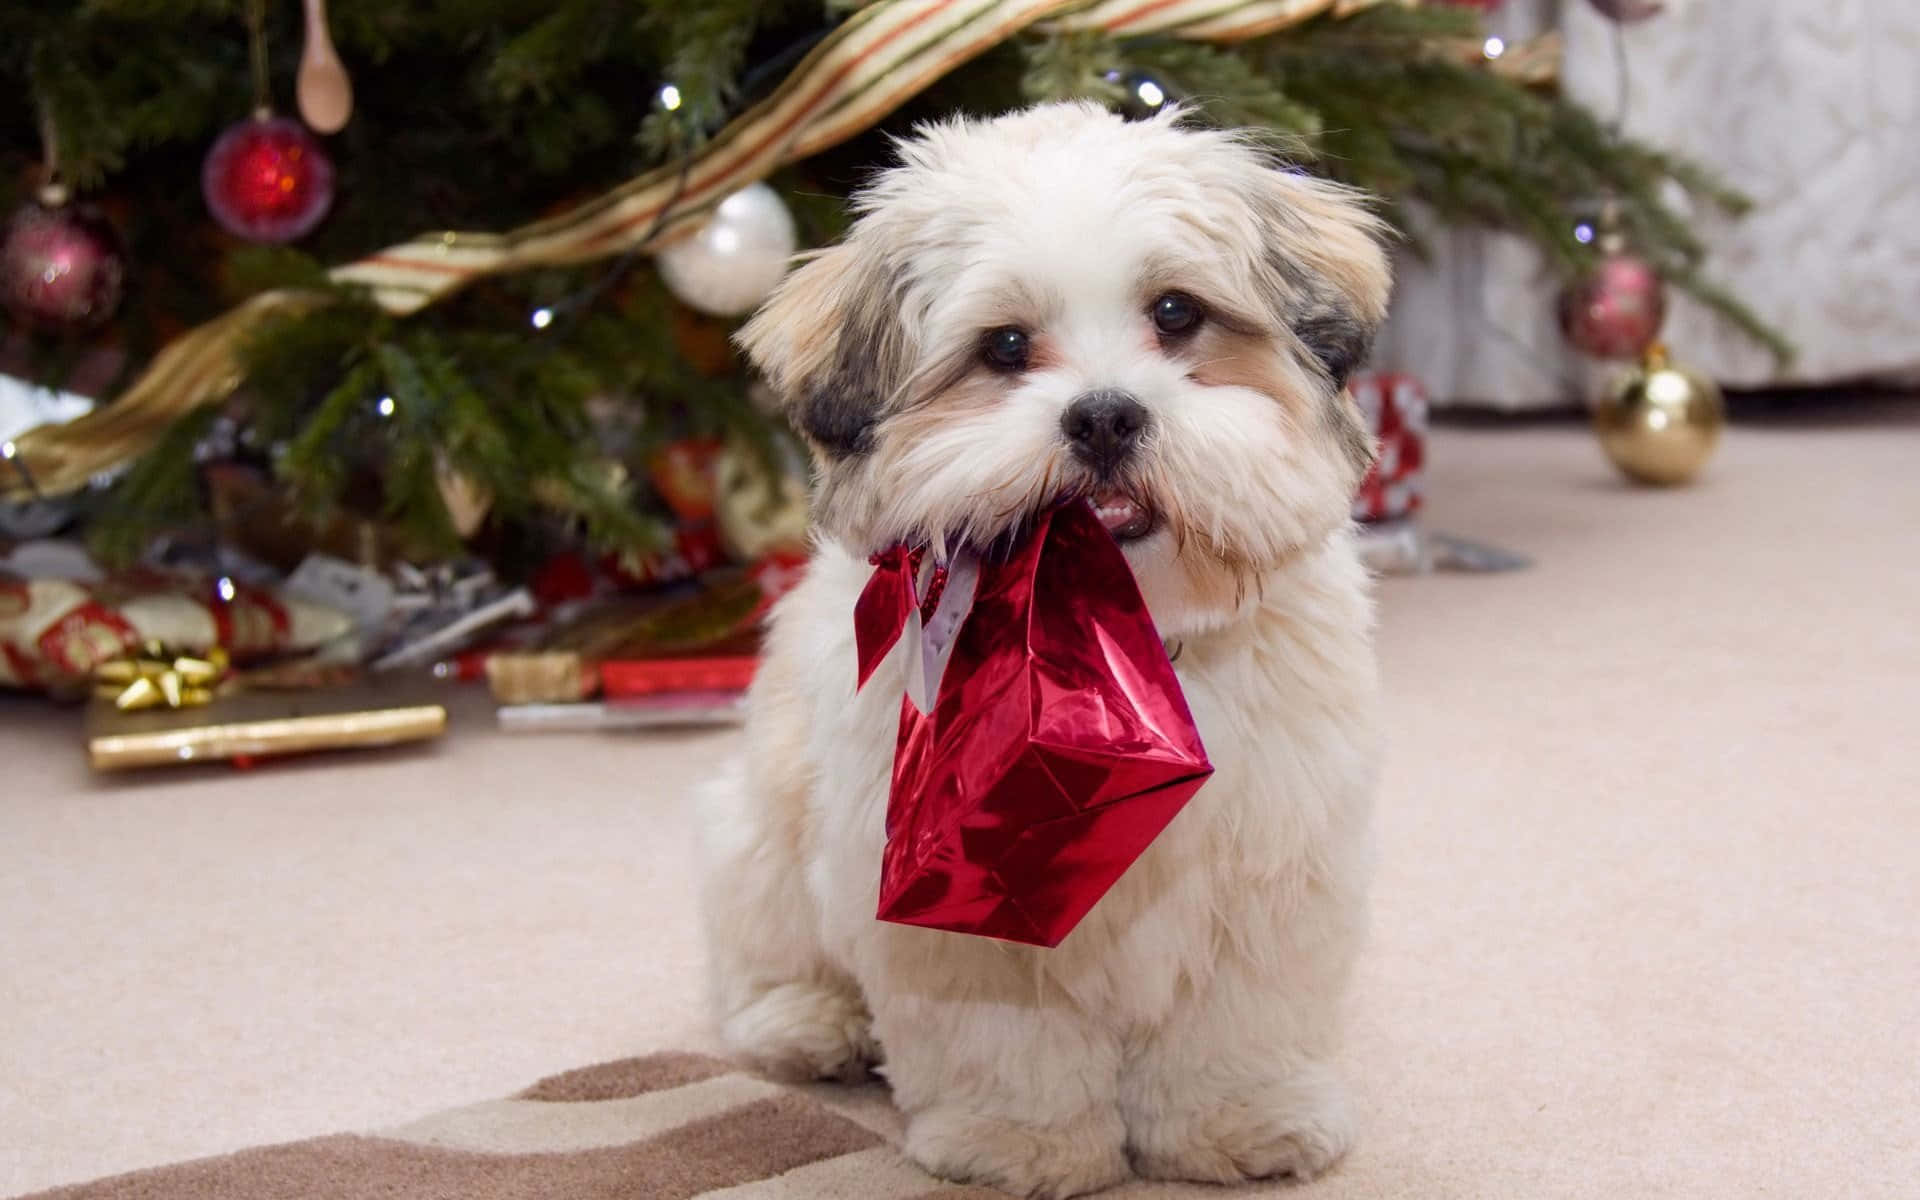 Unpequeño Perro Con Una Bolsa De Regalo Roja Frente A Un Árbol De Navidad